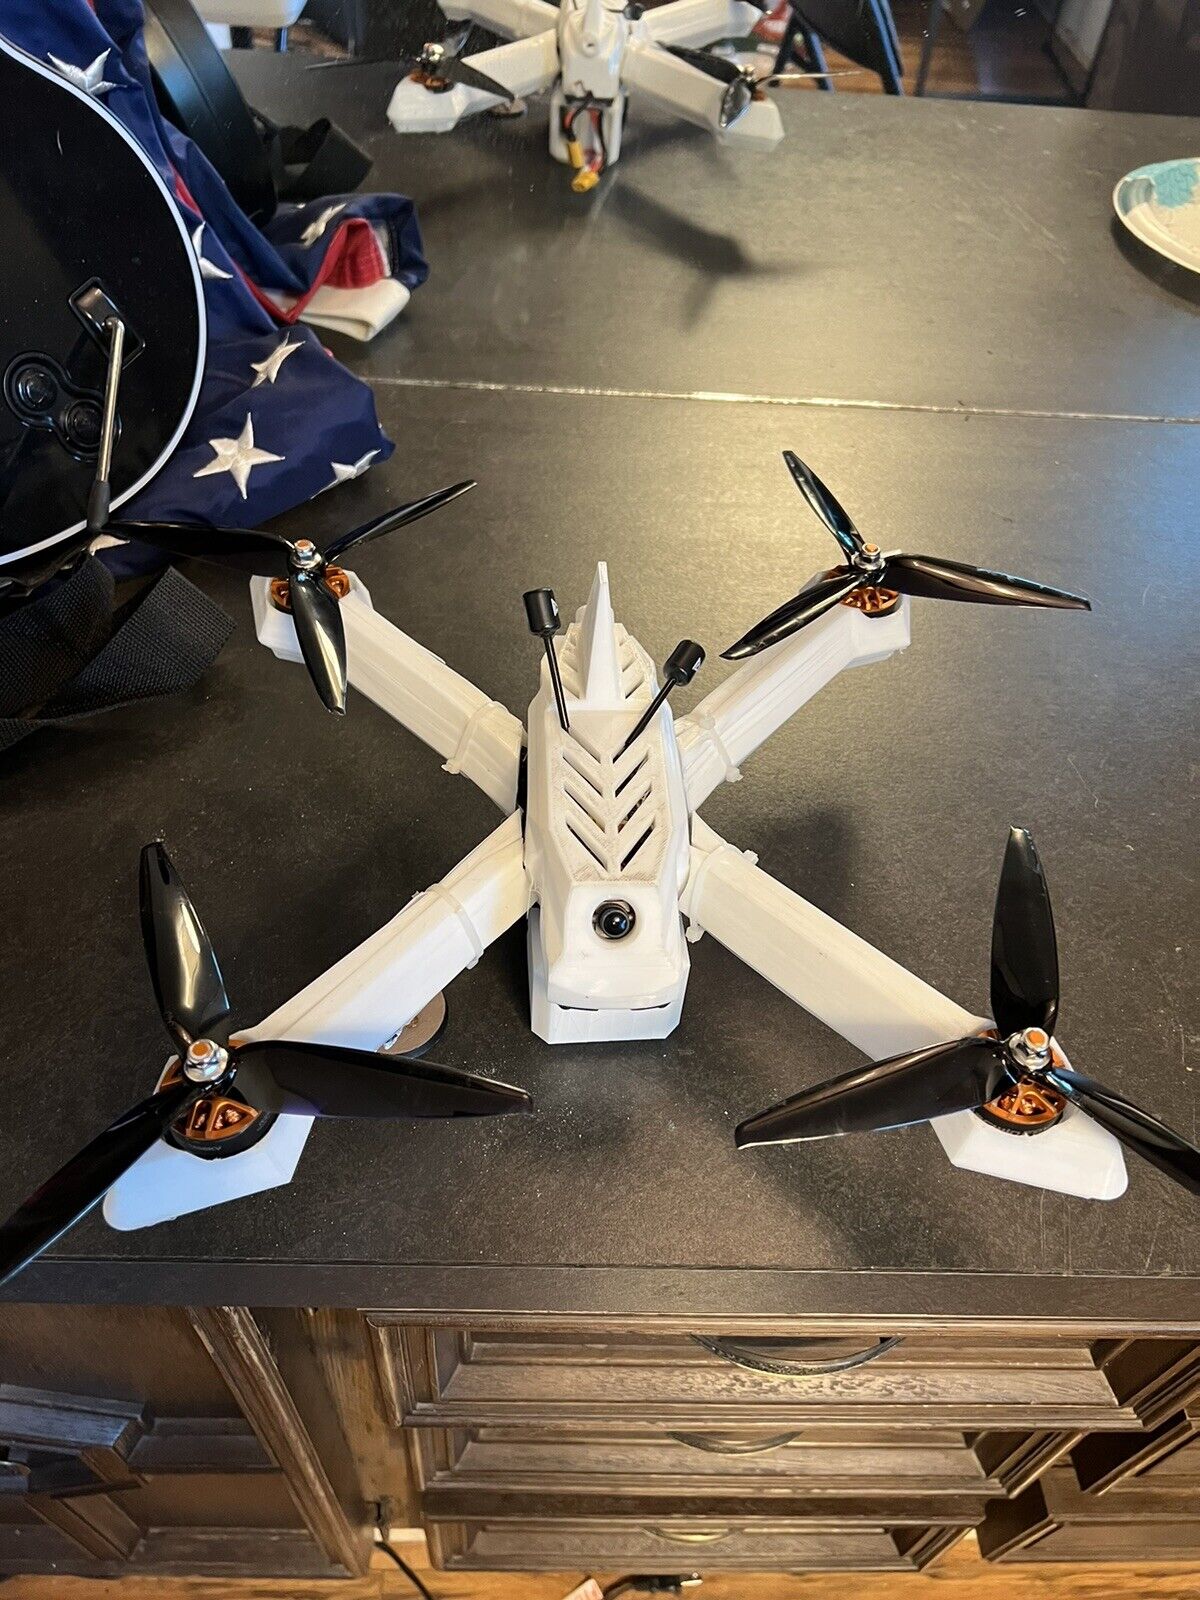 7” racing drone